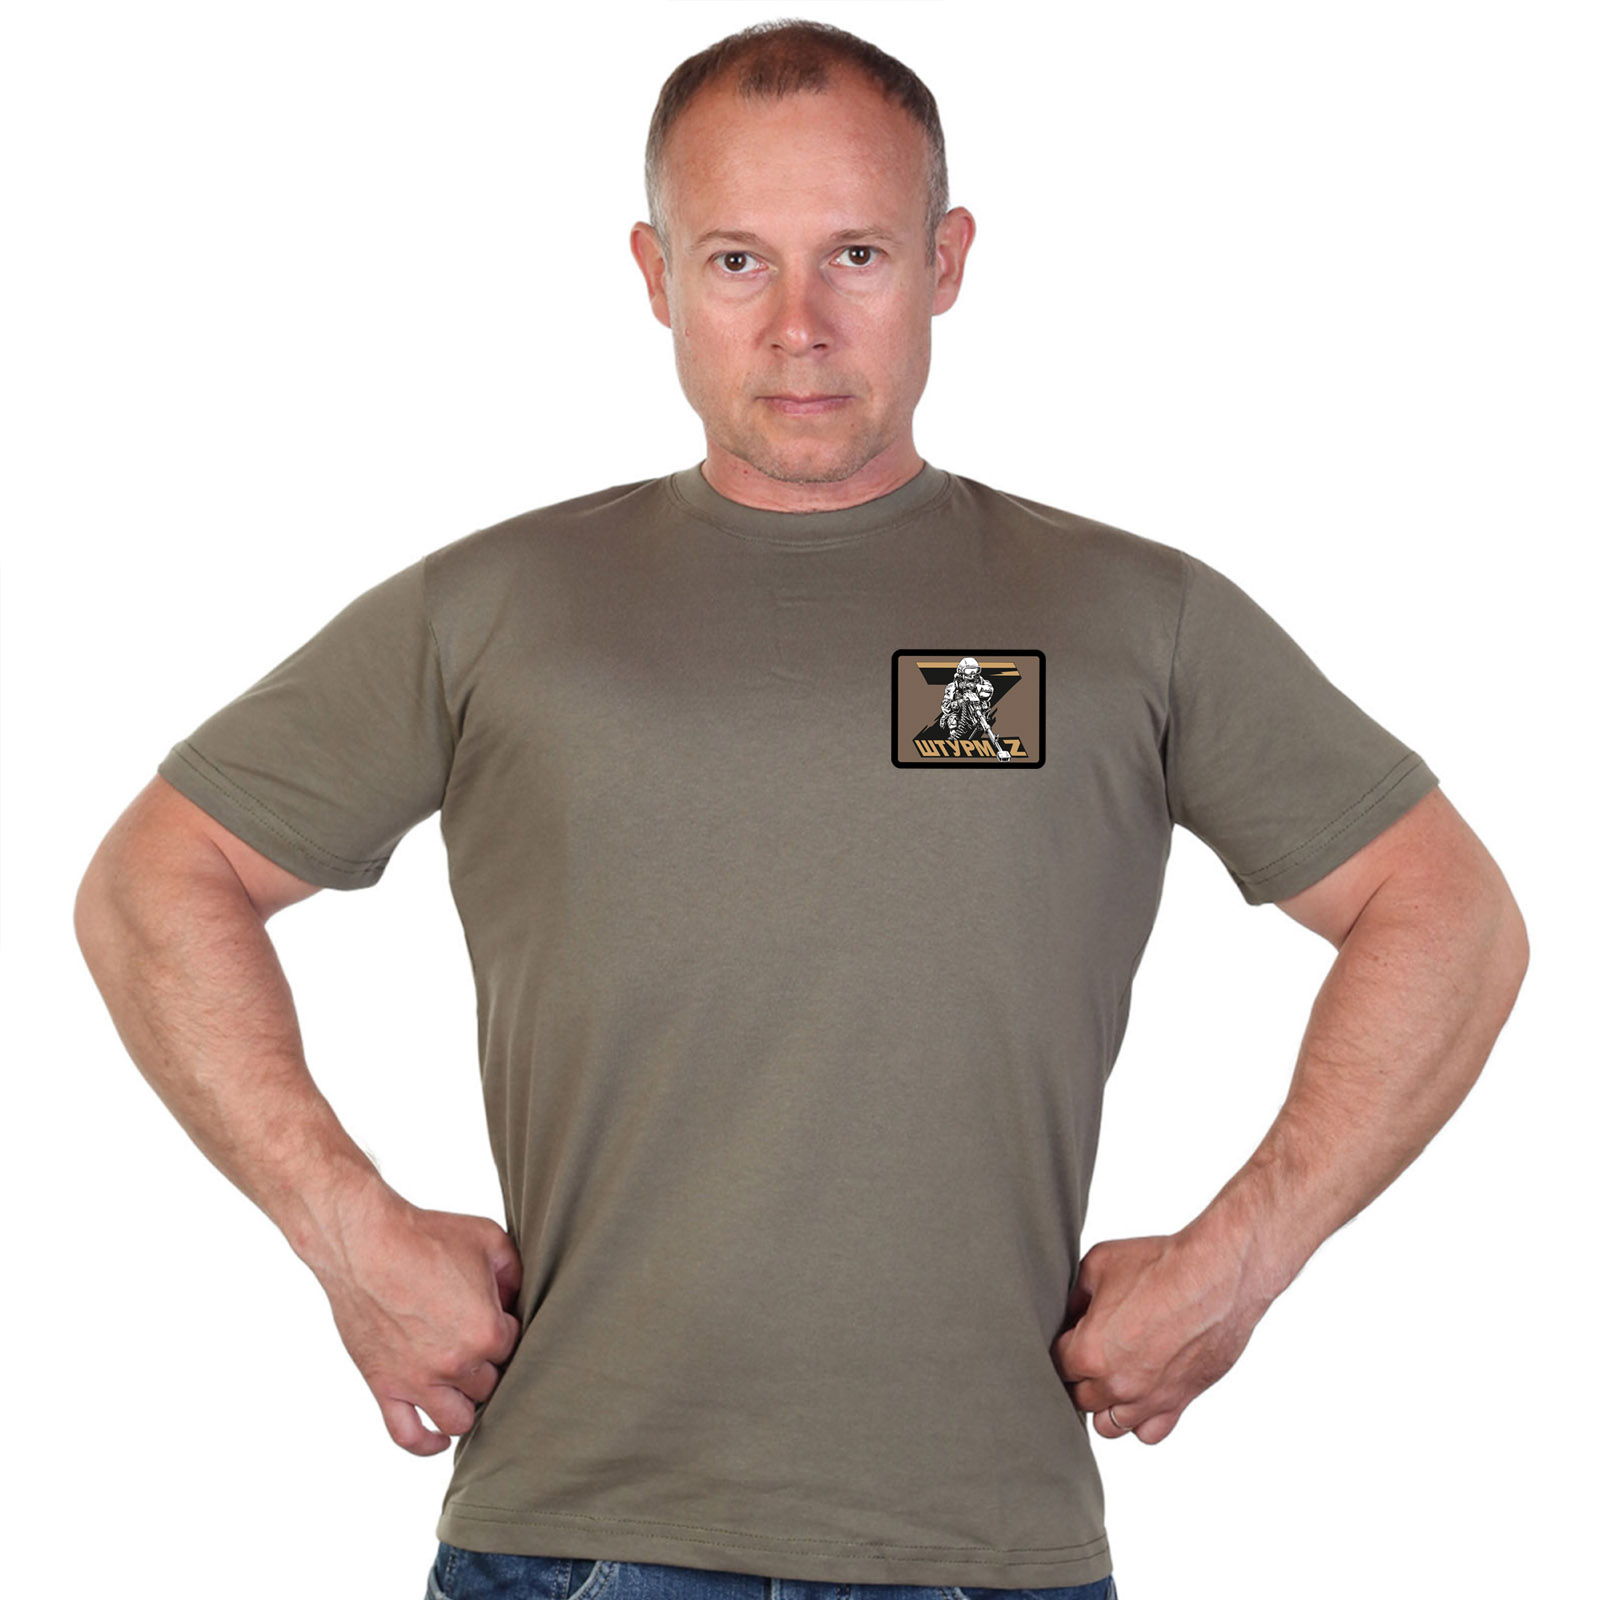 Оливковая футболка с термотрансфером в стиле Z "Штурм"